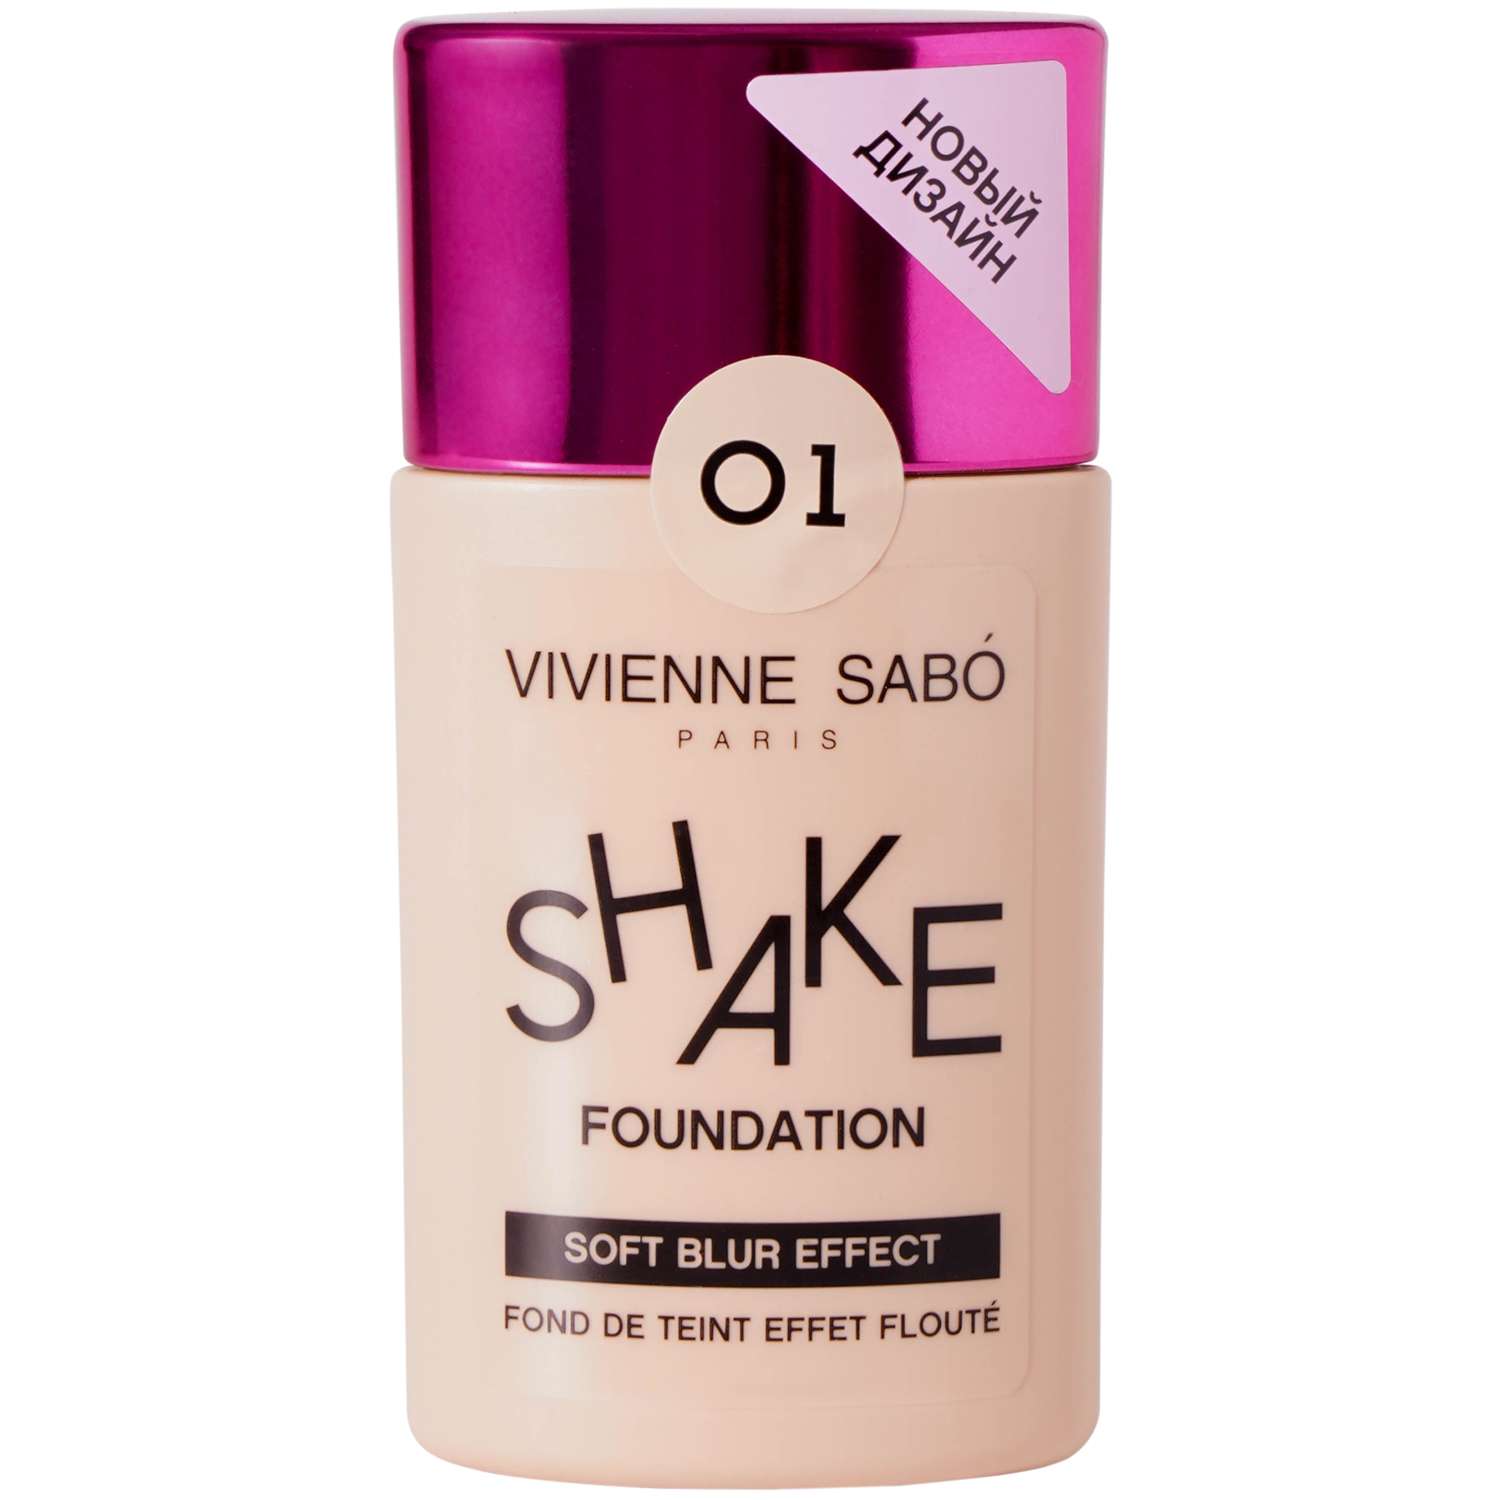 Тональный крем Vivienne Sabo с натуральным блюр эффектом Shakefoundation тон 01 - фото 1